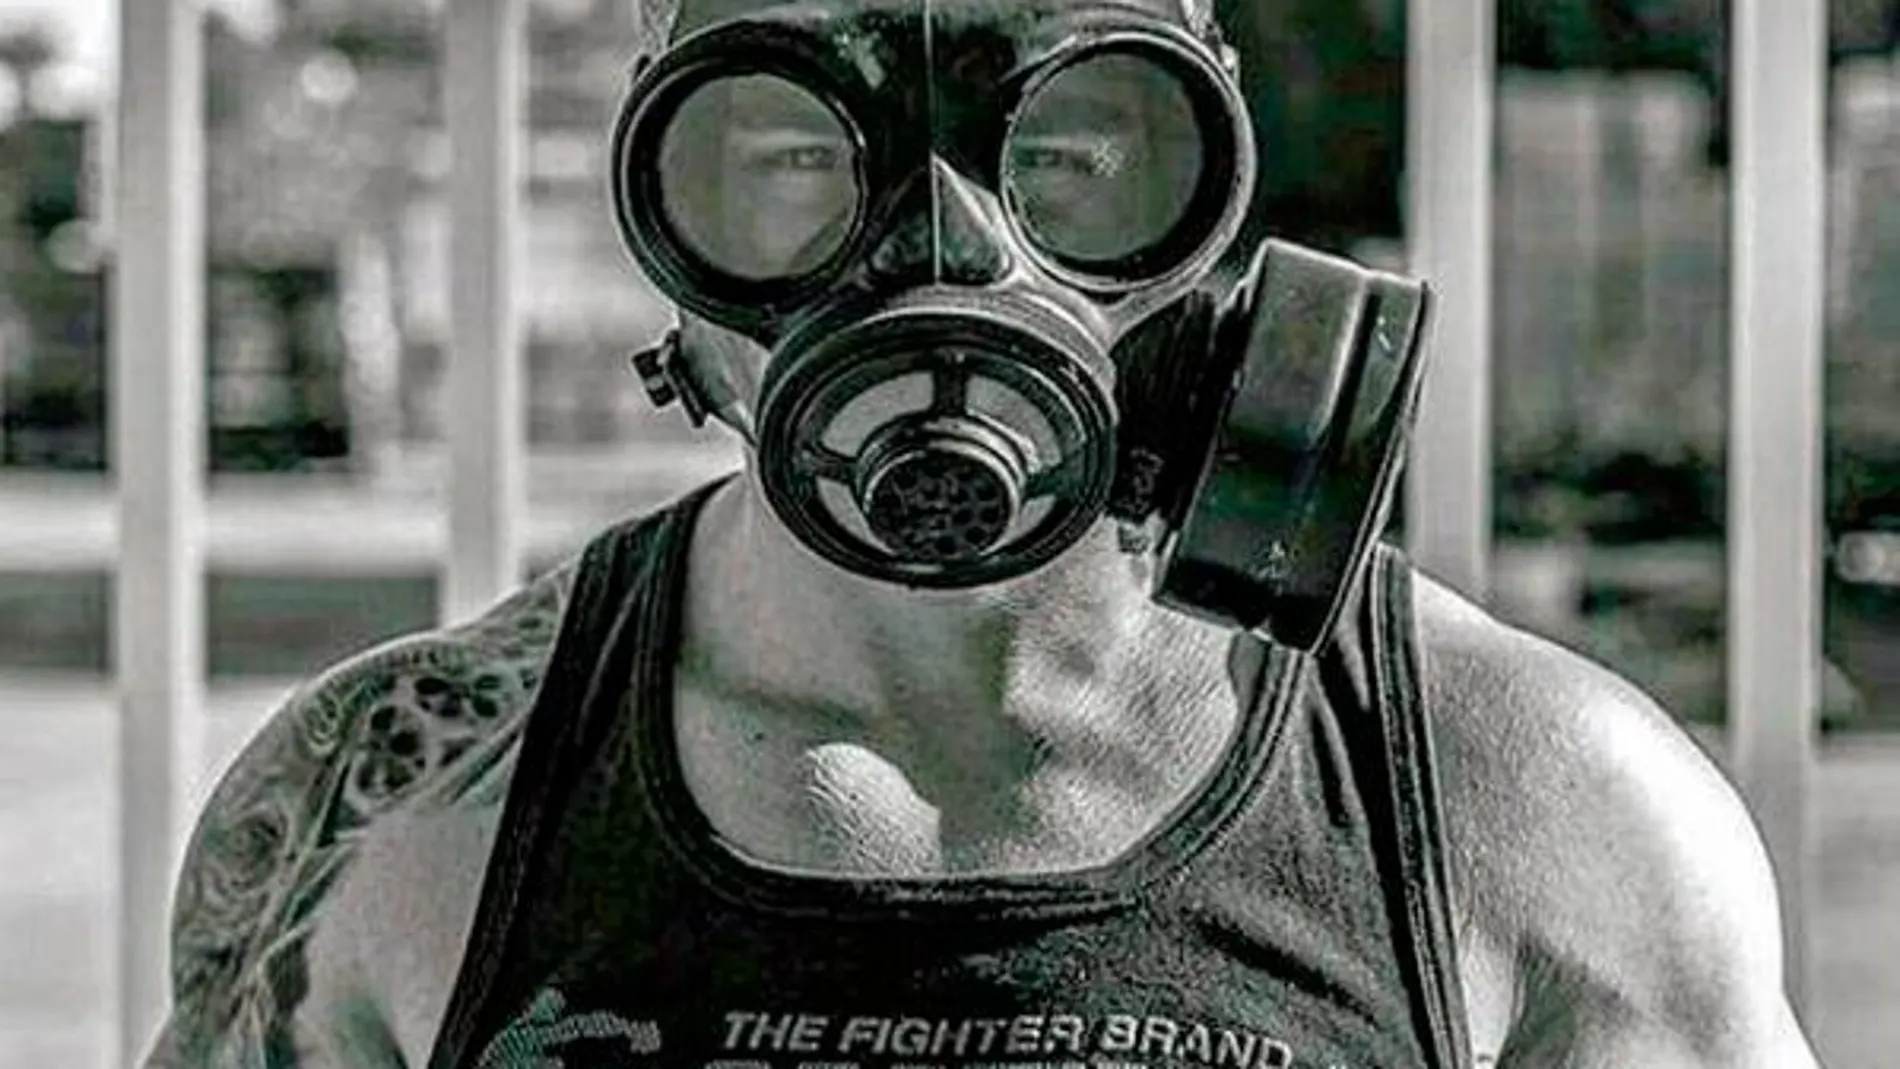 En sus redes sociales, Leandro posa en múltiples imágenes con una máscara antigas